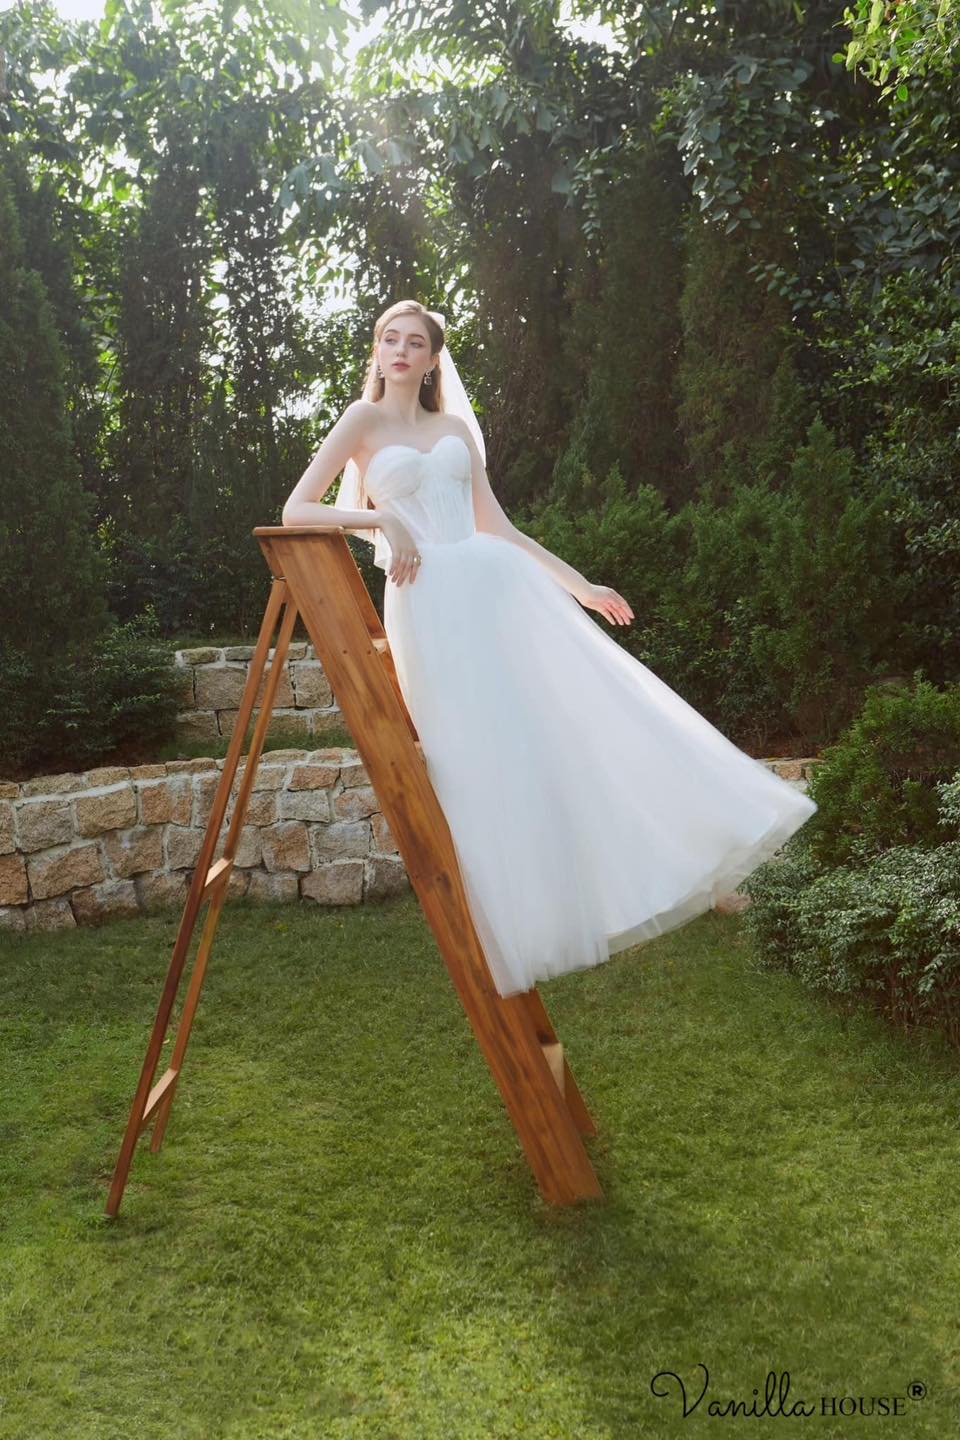 Vanilla House - Thiết kế váy cưới đơn giản, tinh tế, riêng biệt theo dáng nàng dâu